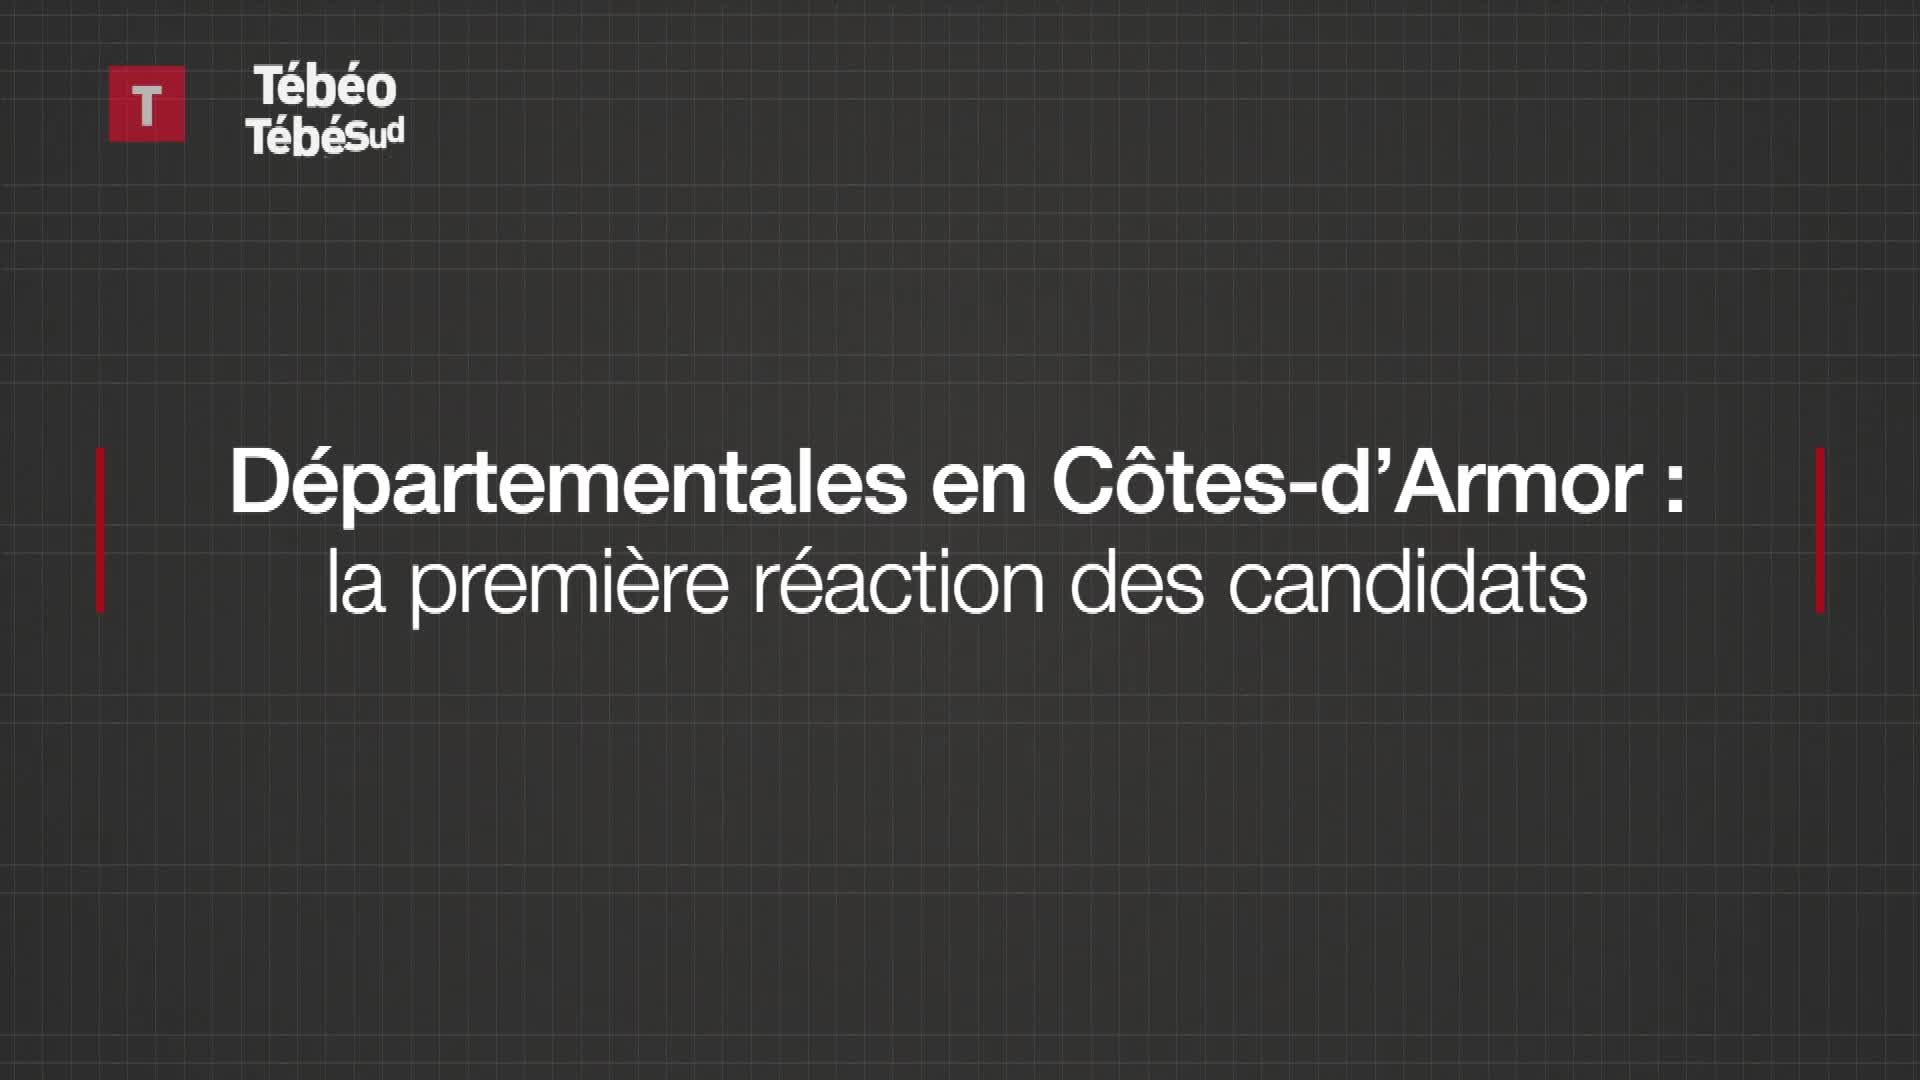 Elections départementales en Côtes-d'Armor, la première réaction des candidats (Le Télégramme)